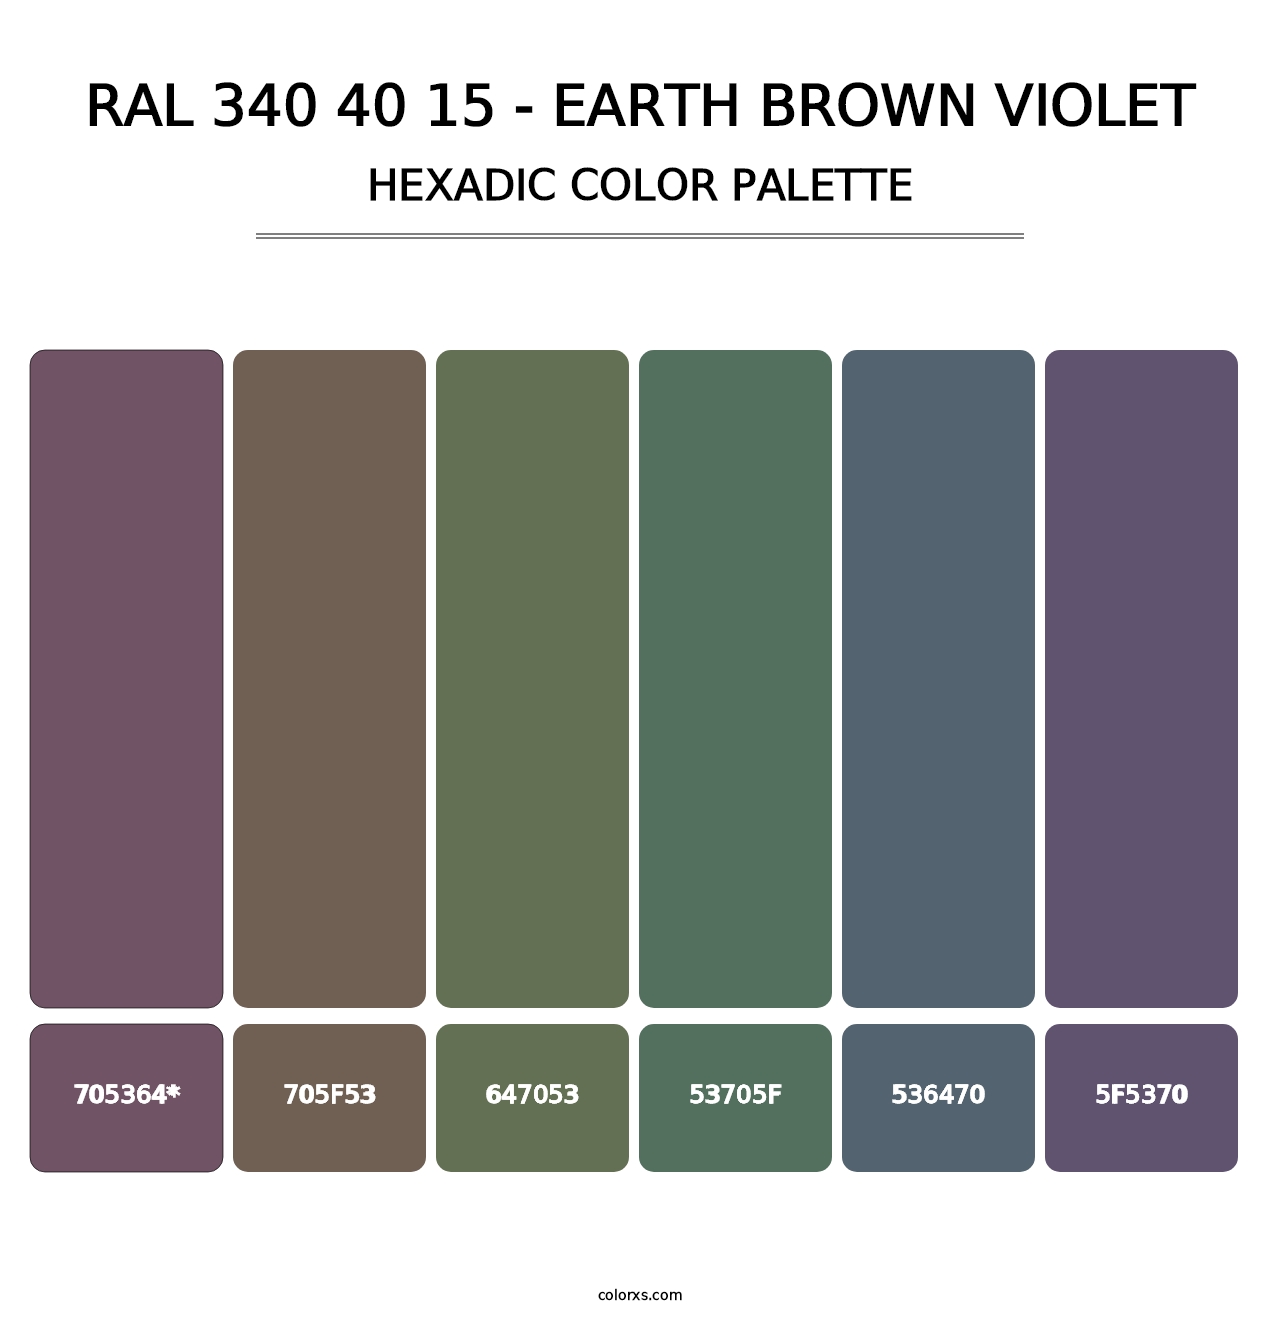 RAL 340 40 15 - Earth Brown Violet - Hexadic Color Palette